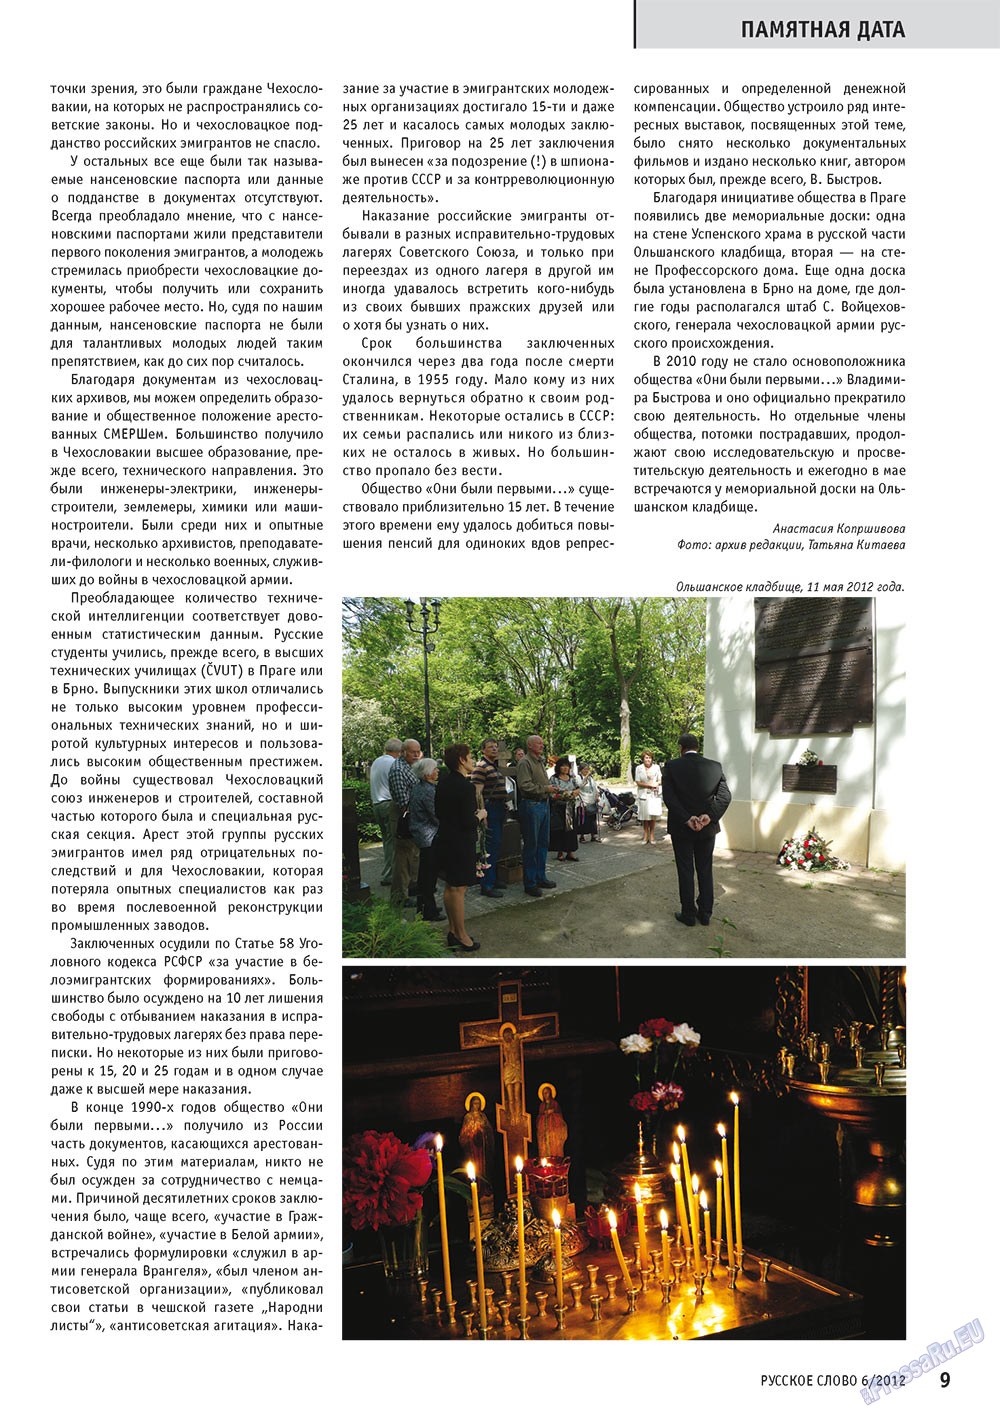 Русское слово, журнал. 2012 №6 стр.9